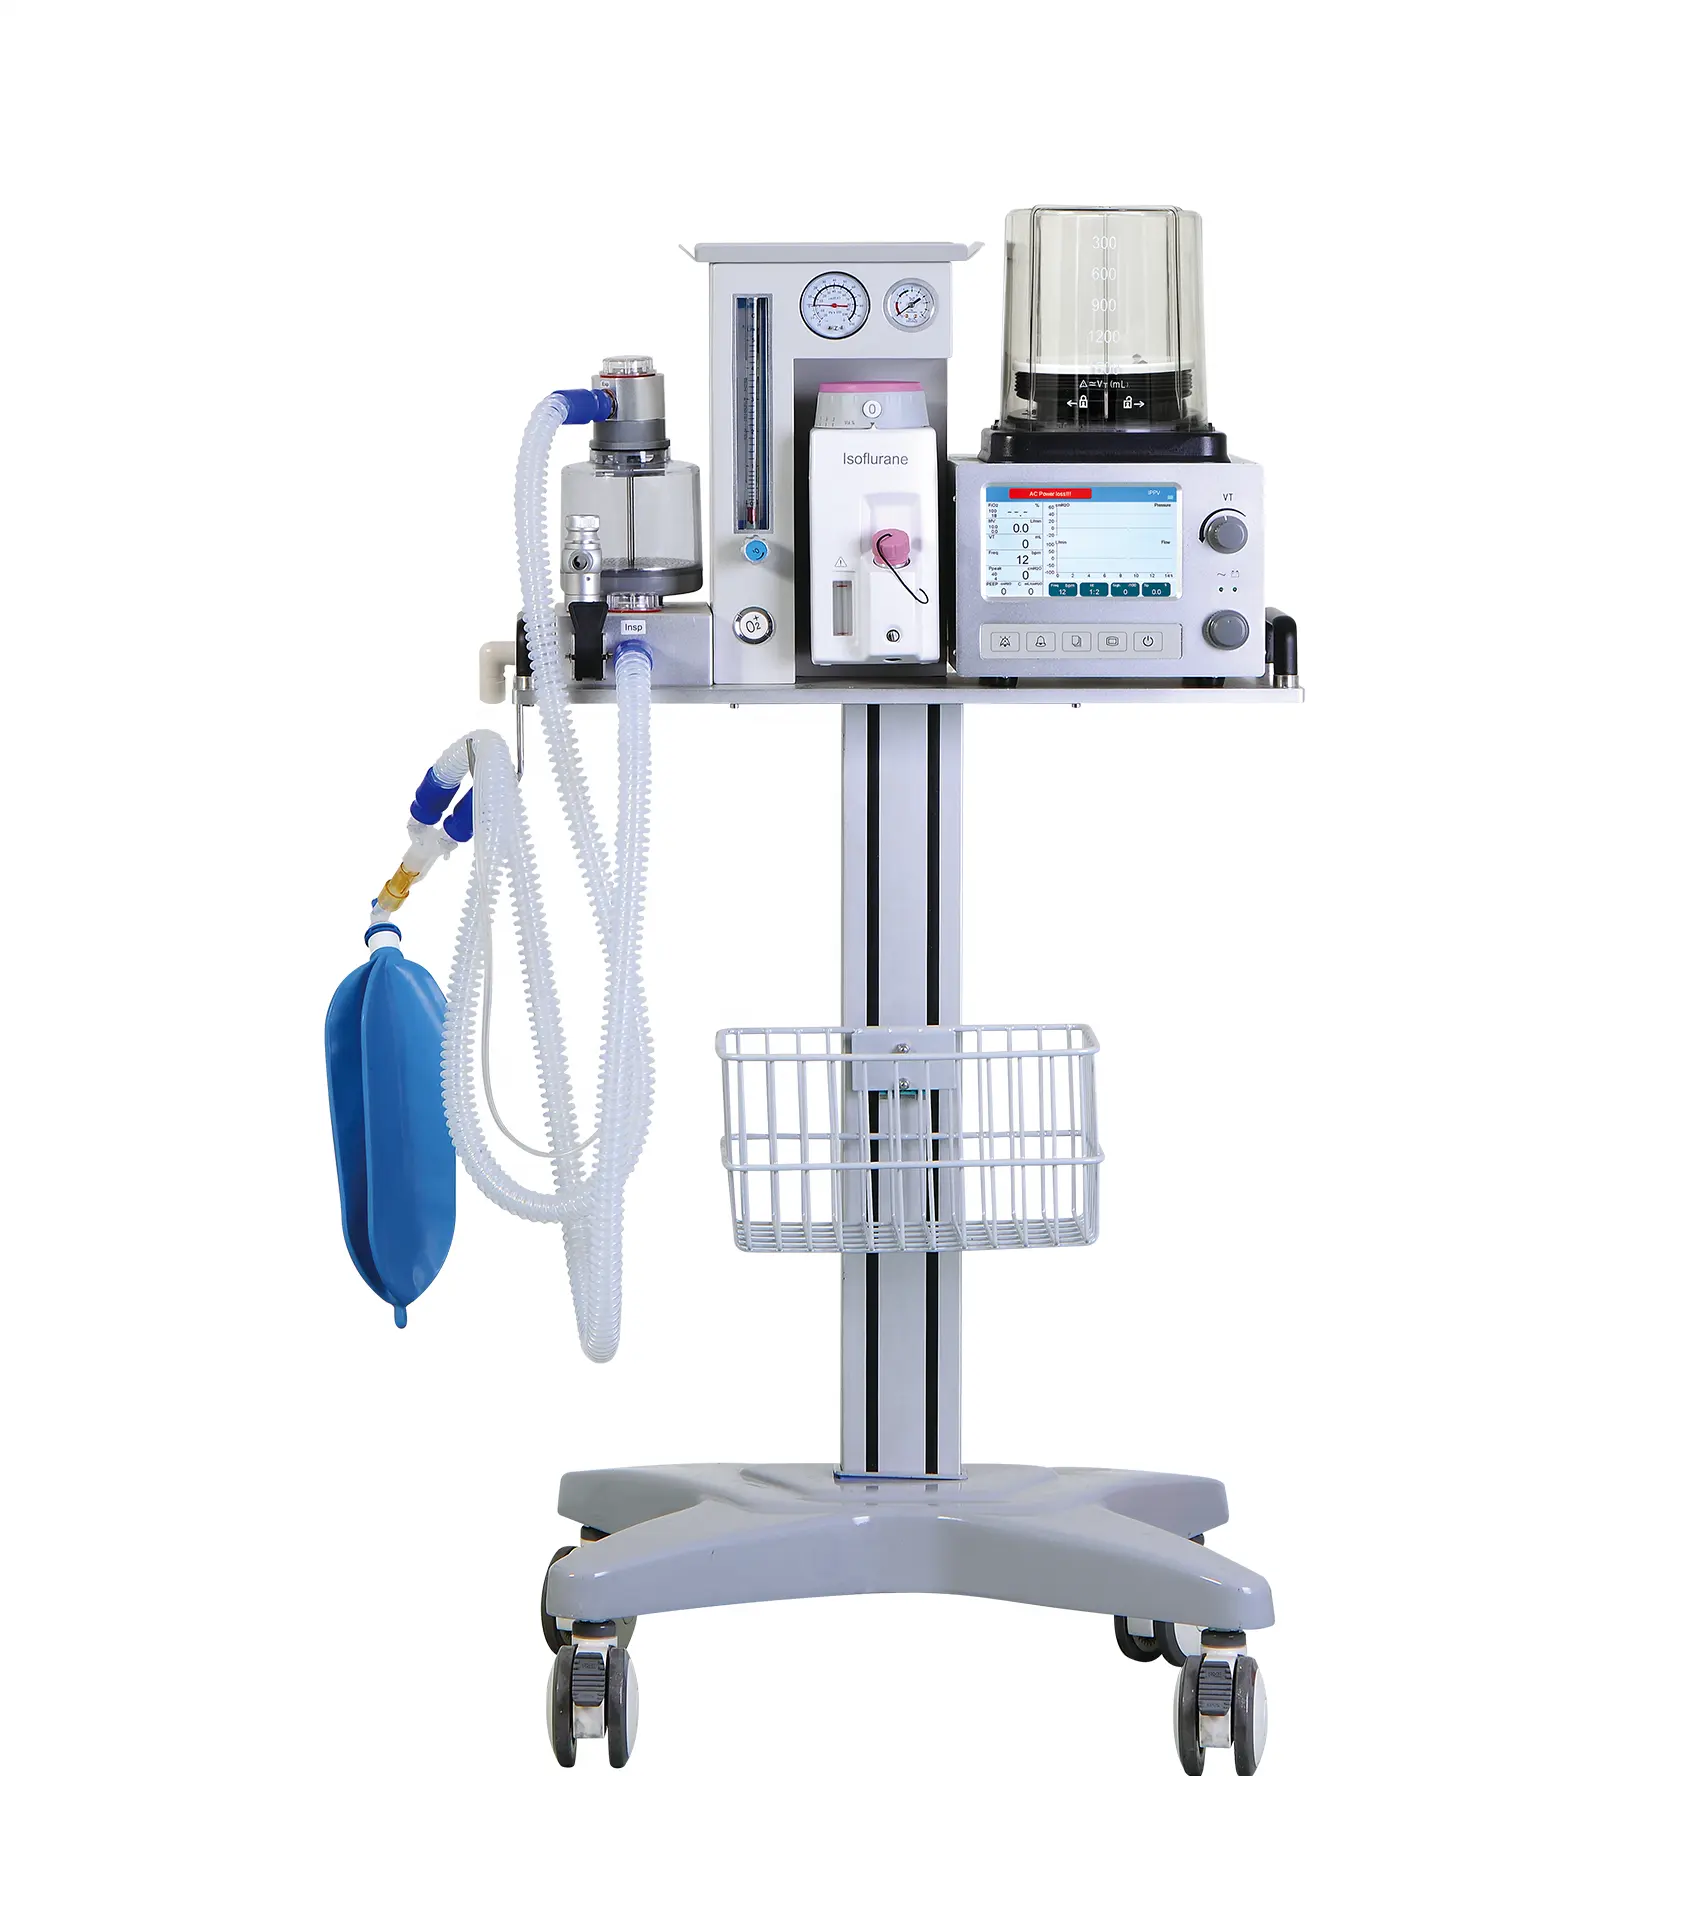 Сравните с GE аппаратом для анестезии DM6B Superstar, ветеринарный аппарат для анестезии, хорошая цена для домашних животных